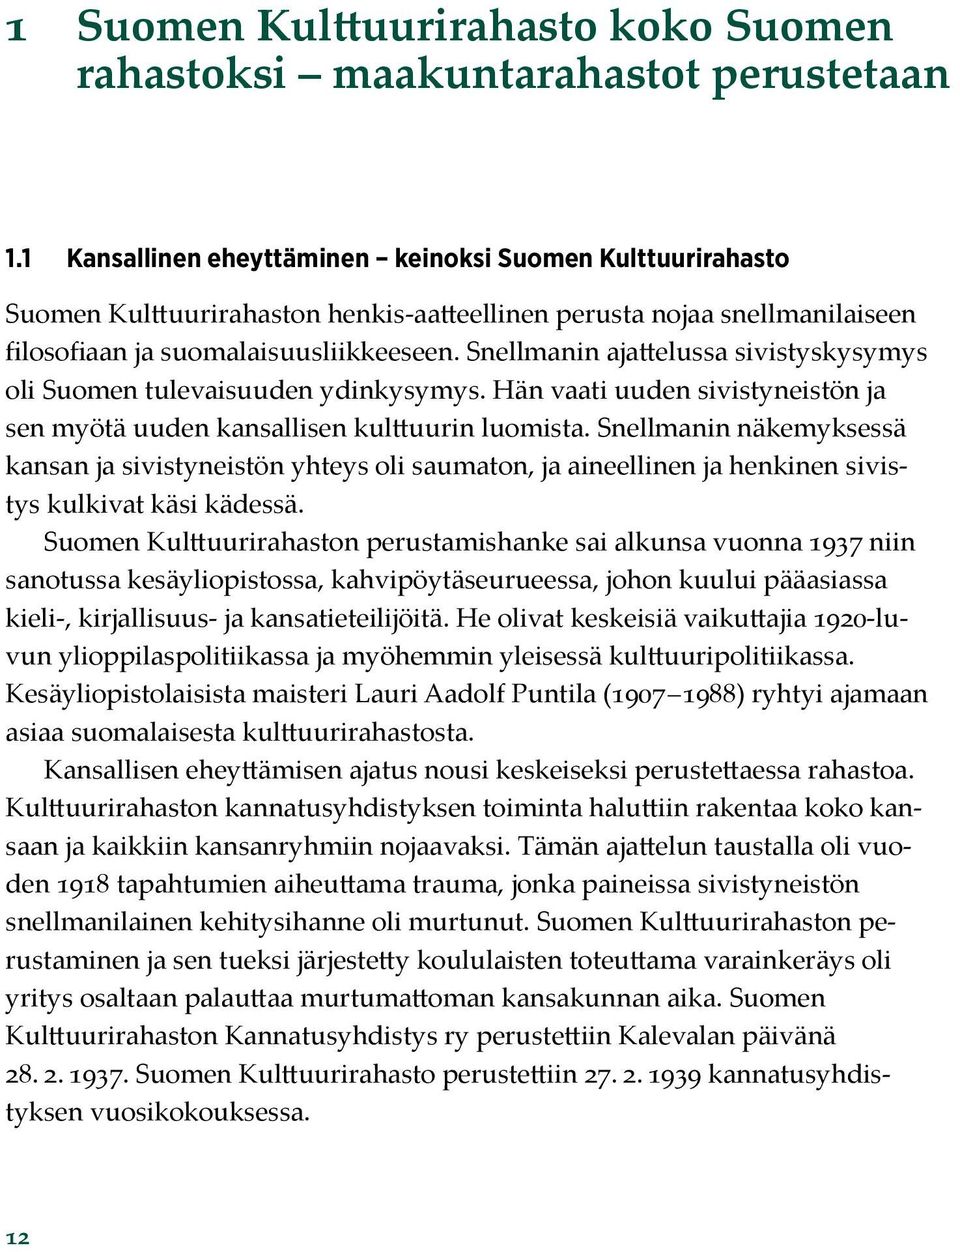 Snellmanin ajattelussa sivistyskysymys oli Suomen tulevaisuuden ydinkysymys. Hän vaati uuden sivistyneistön ja sen myötä uuden kansallisen kulttuurin luomista.